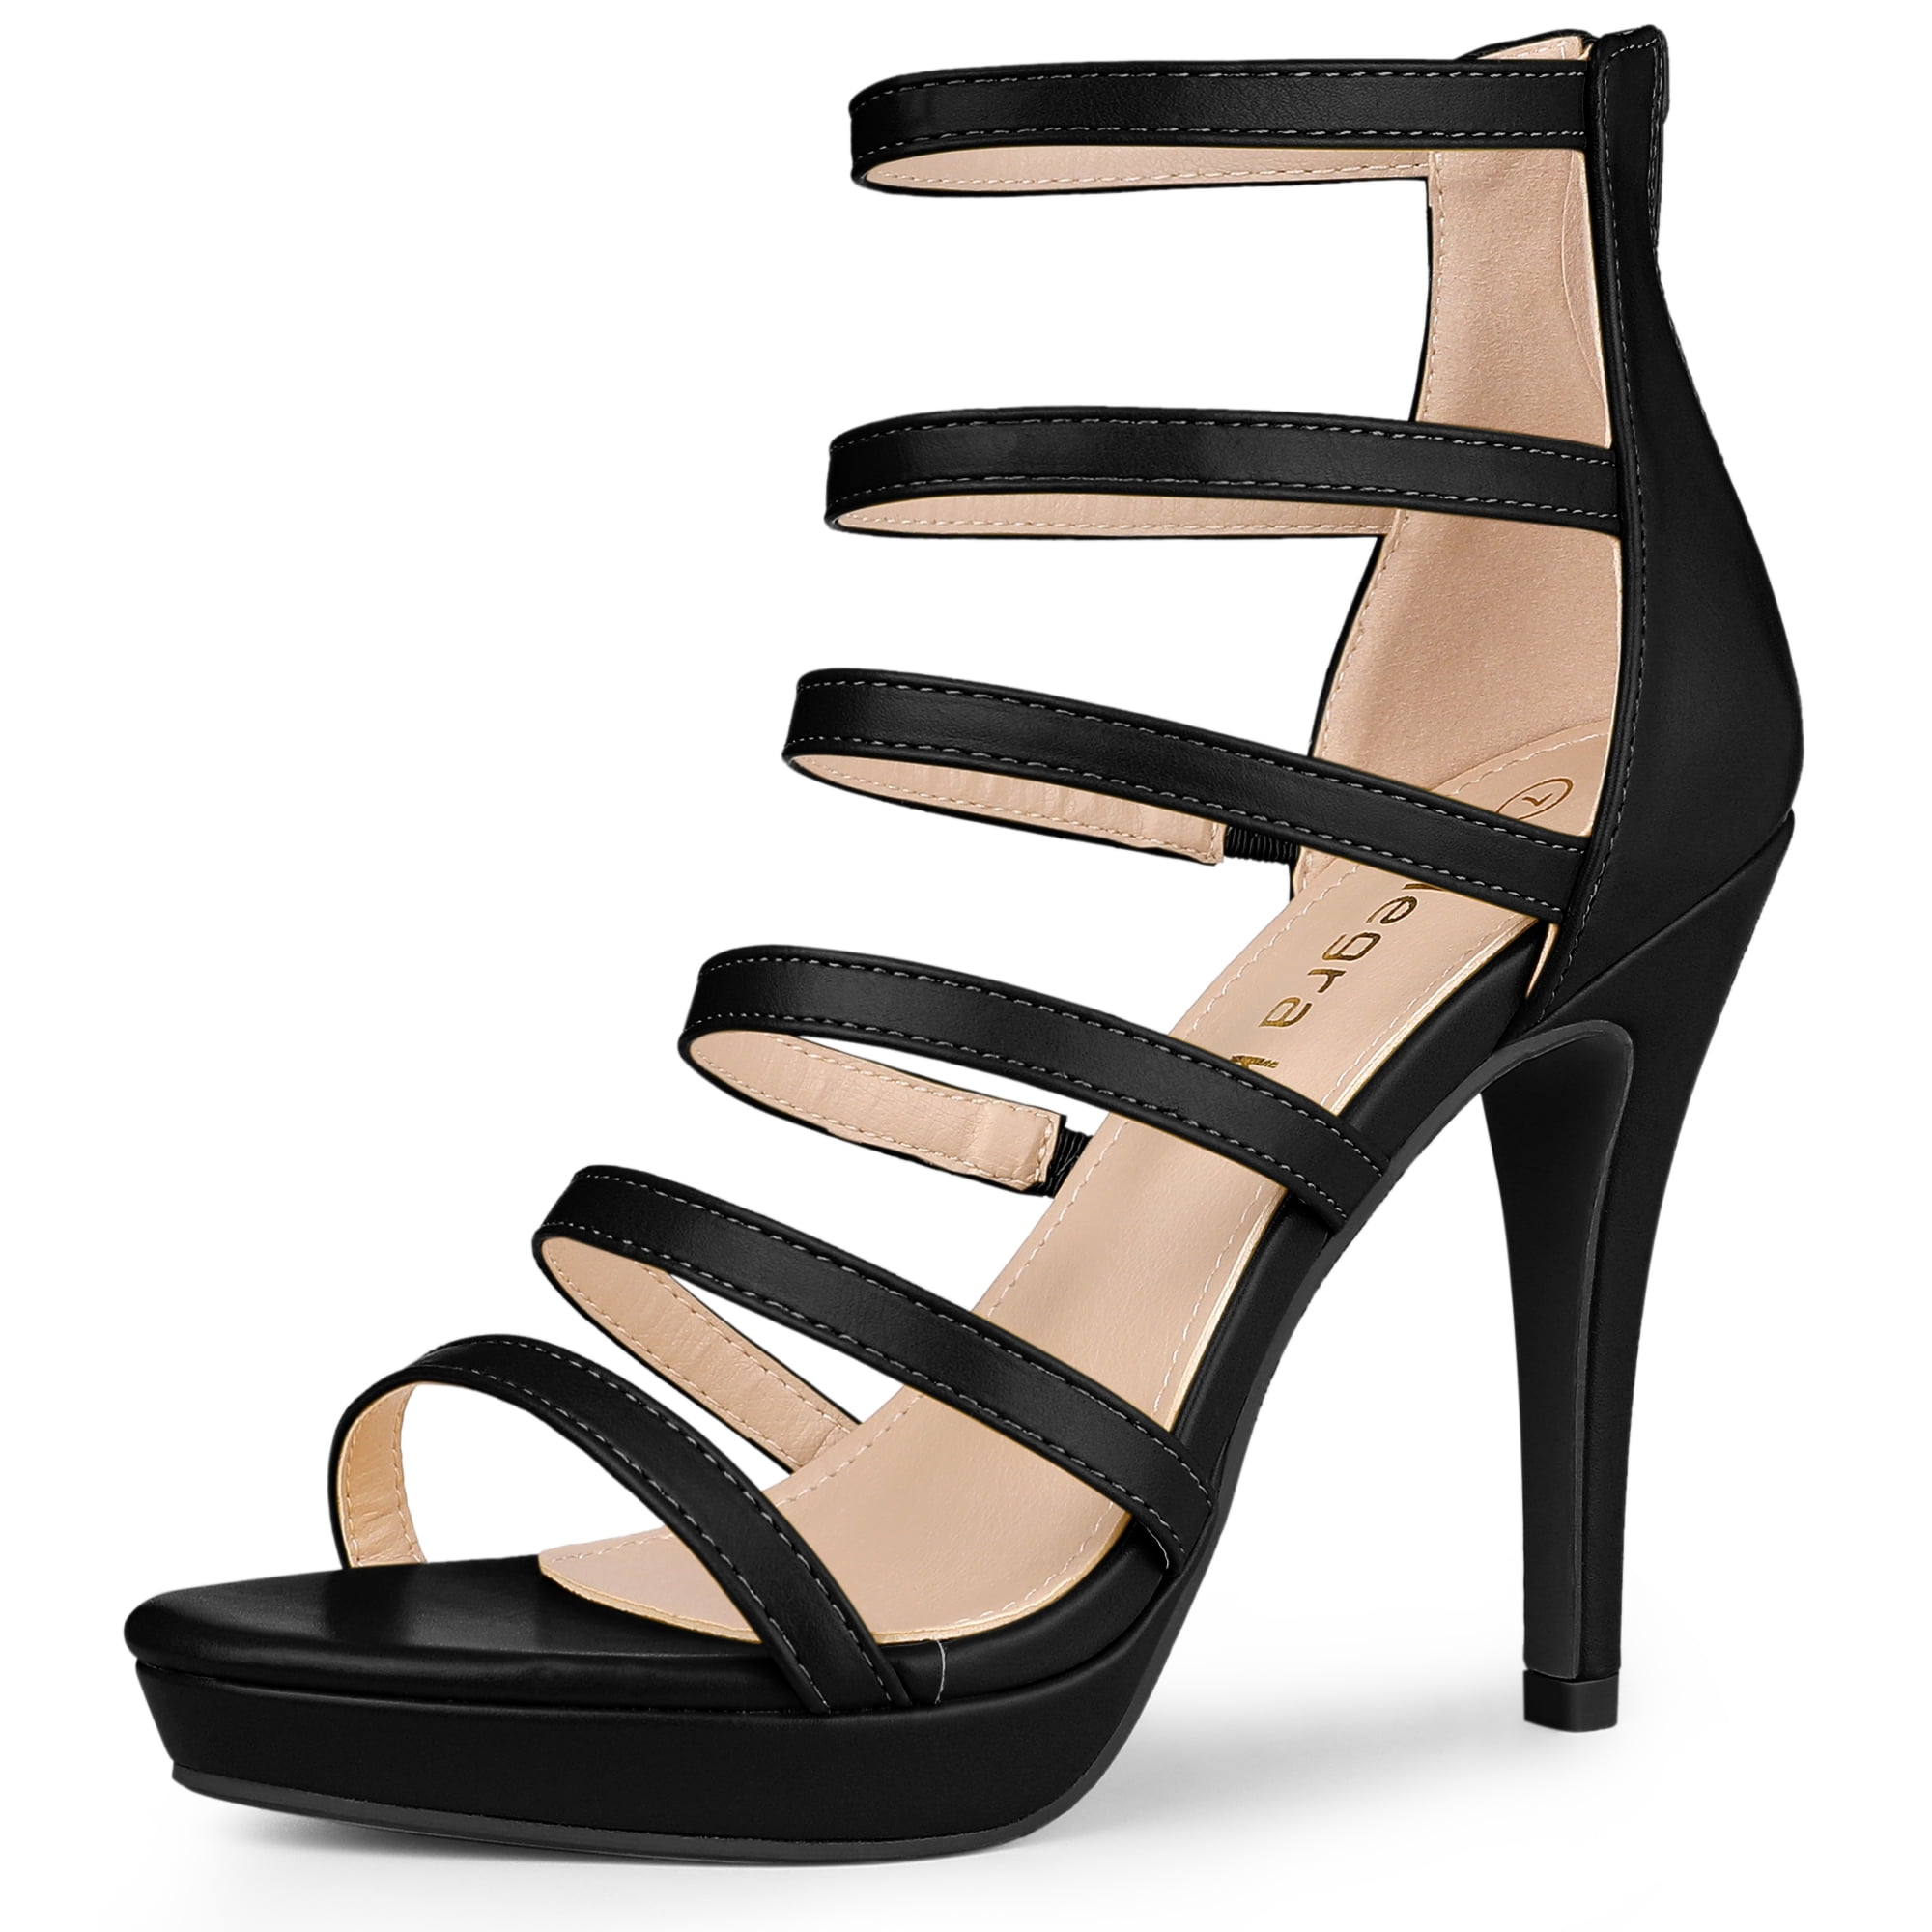 Sorbern Black Gladiator Style Sandals For Women High Heel Platform Shoes  Back Zipper